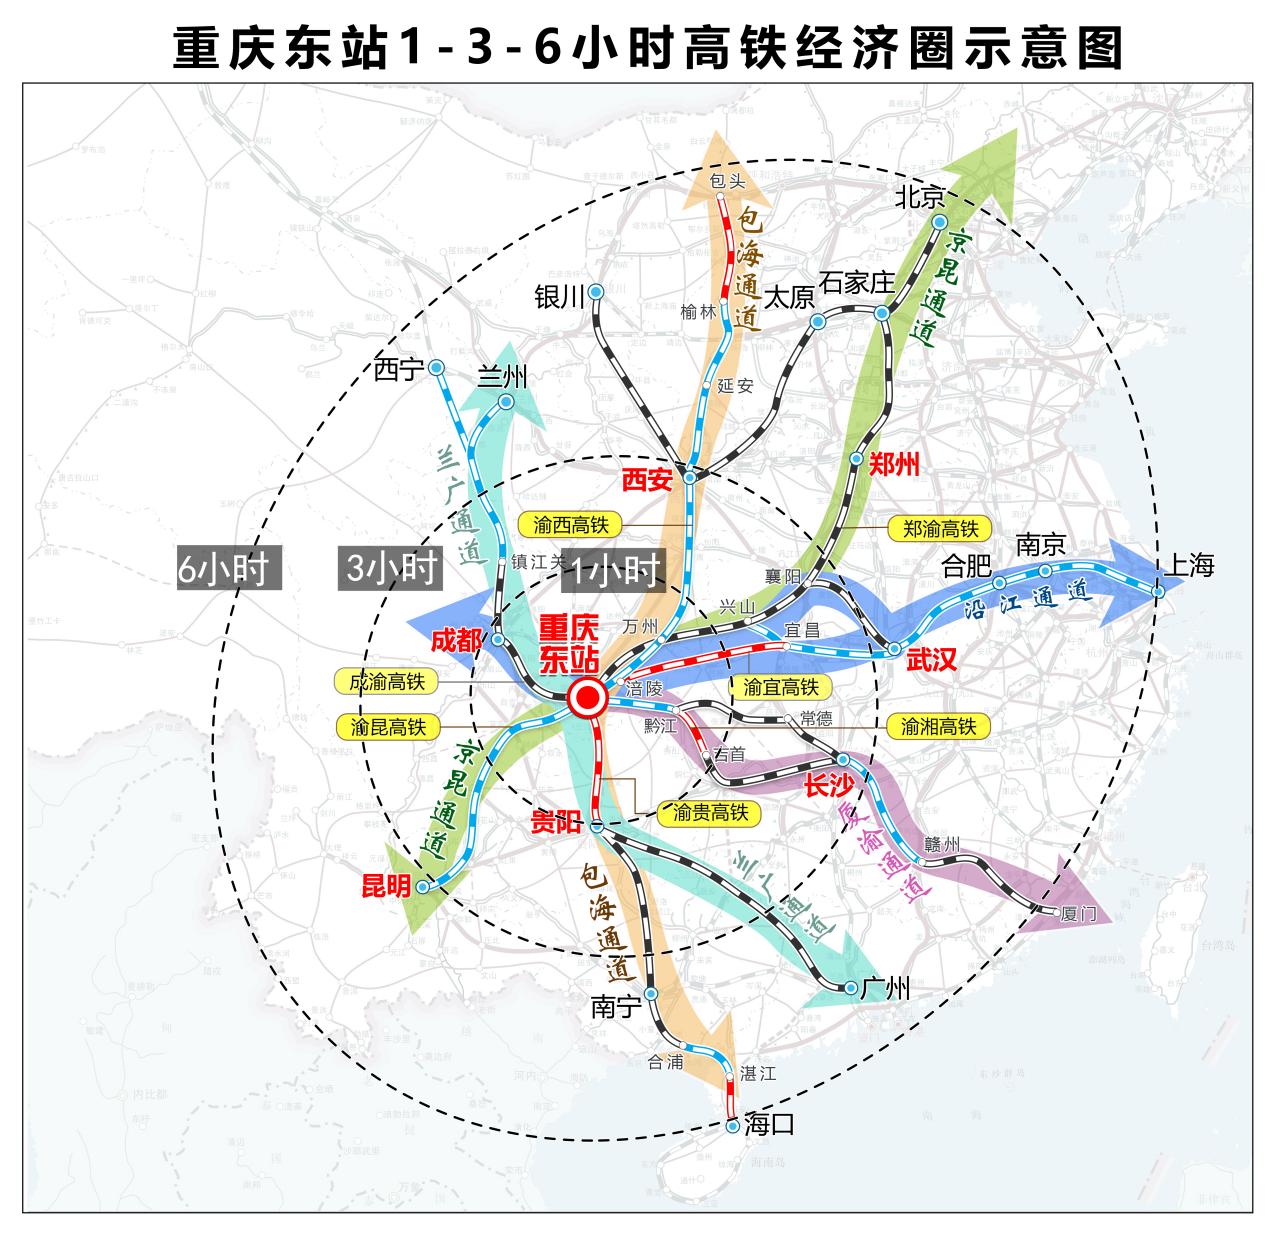 重庆东站预计2025年建成投用 奋力打造城市新地标